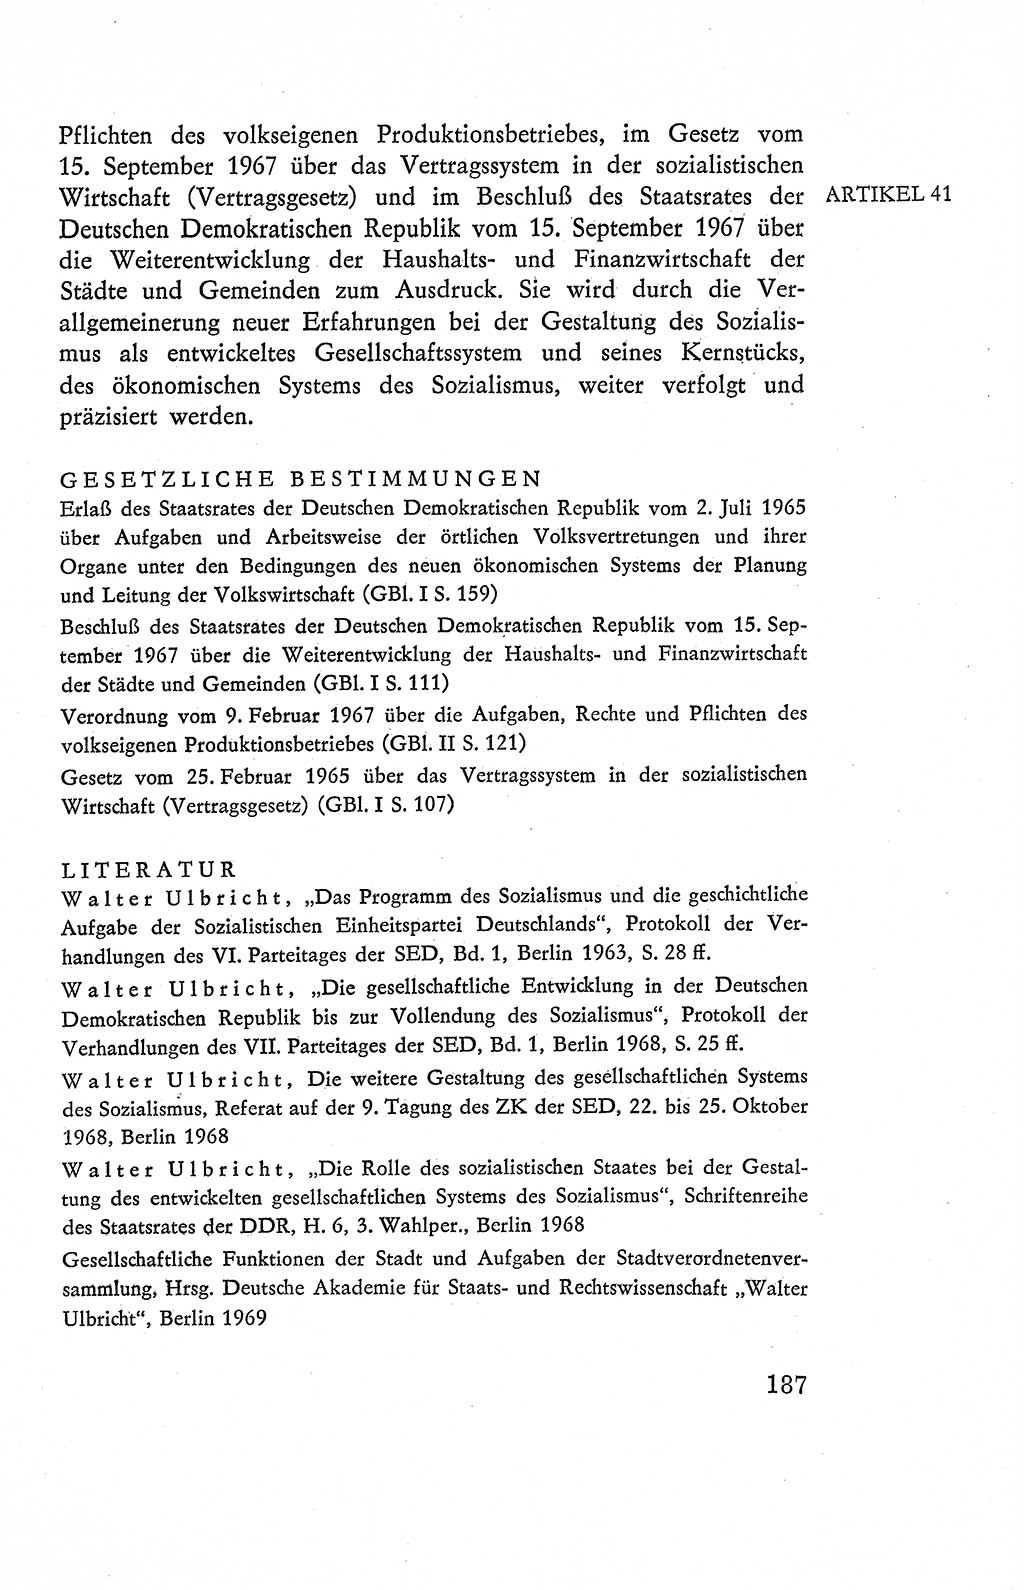 Verfassung der Deutschen Demokratischen Republik (DDR), Dokumente, Kommentar 1969, Band 2, Seite 187 (Verf. DDR Dok. Komm. 1969, Bd. 2, S. 187)